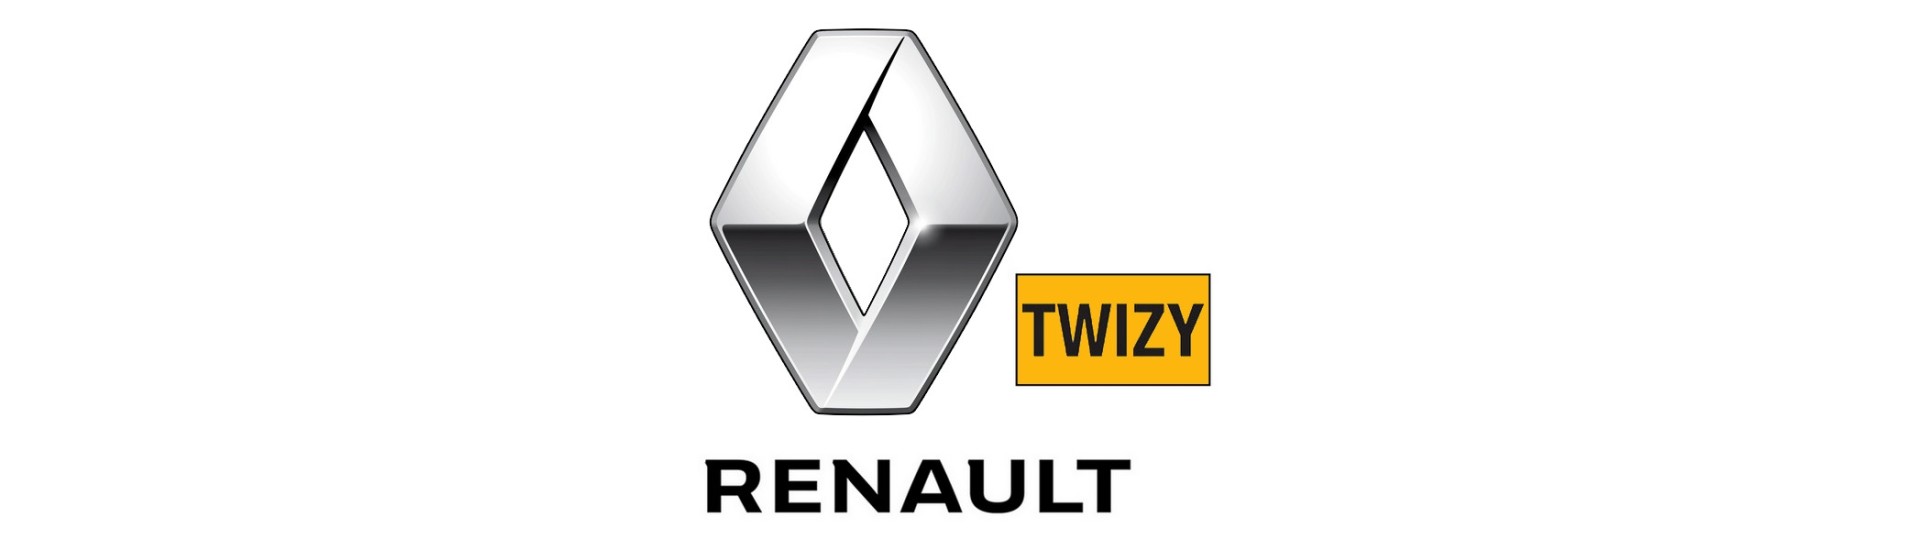 Elektrische Strahlung zum besten Preis Auto ohne Lizenz Renault Twizy